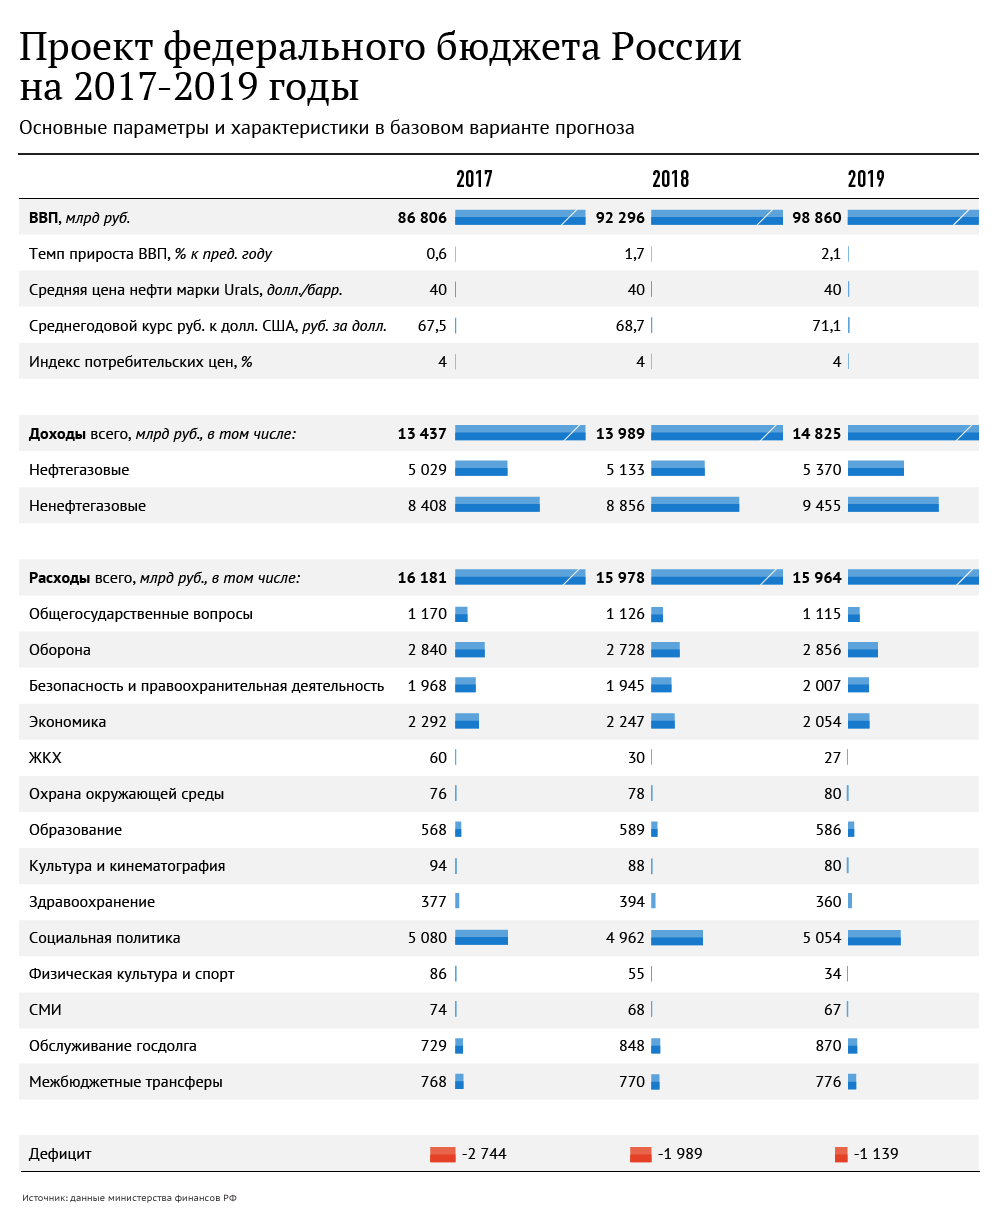 Проект федерального бюджета России на 2017-2019 годы